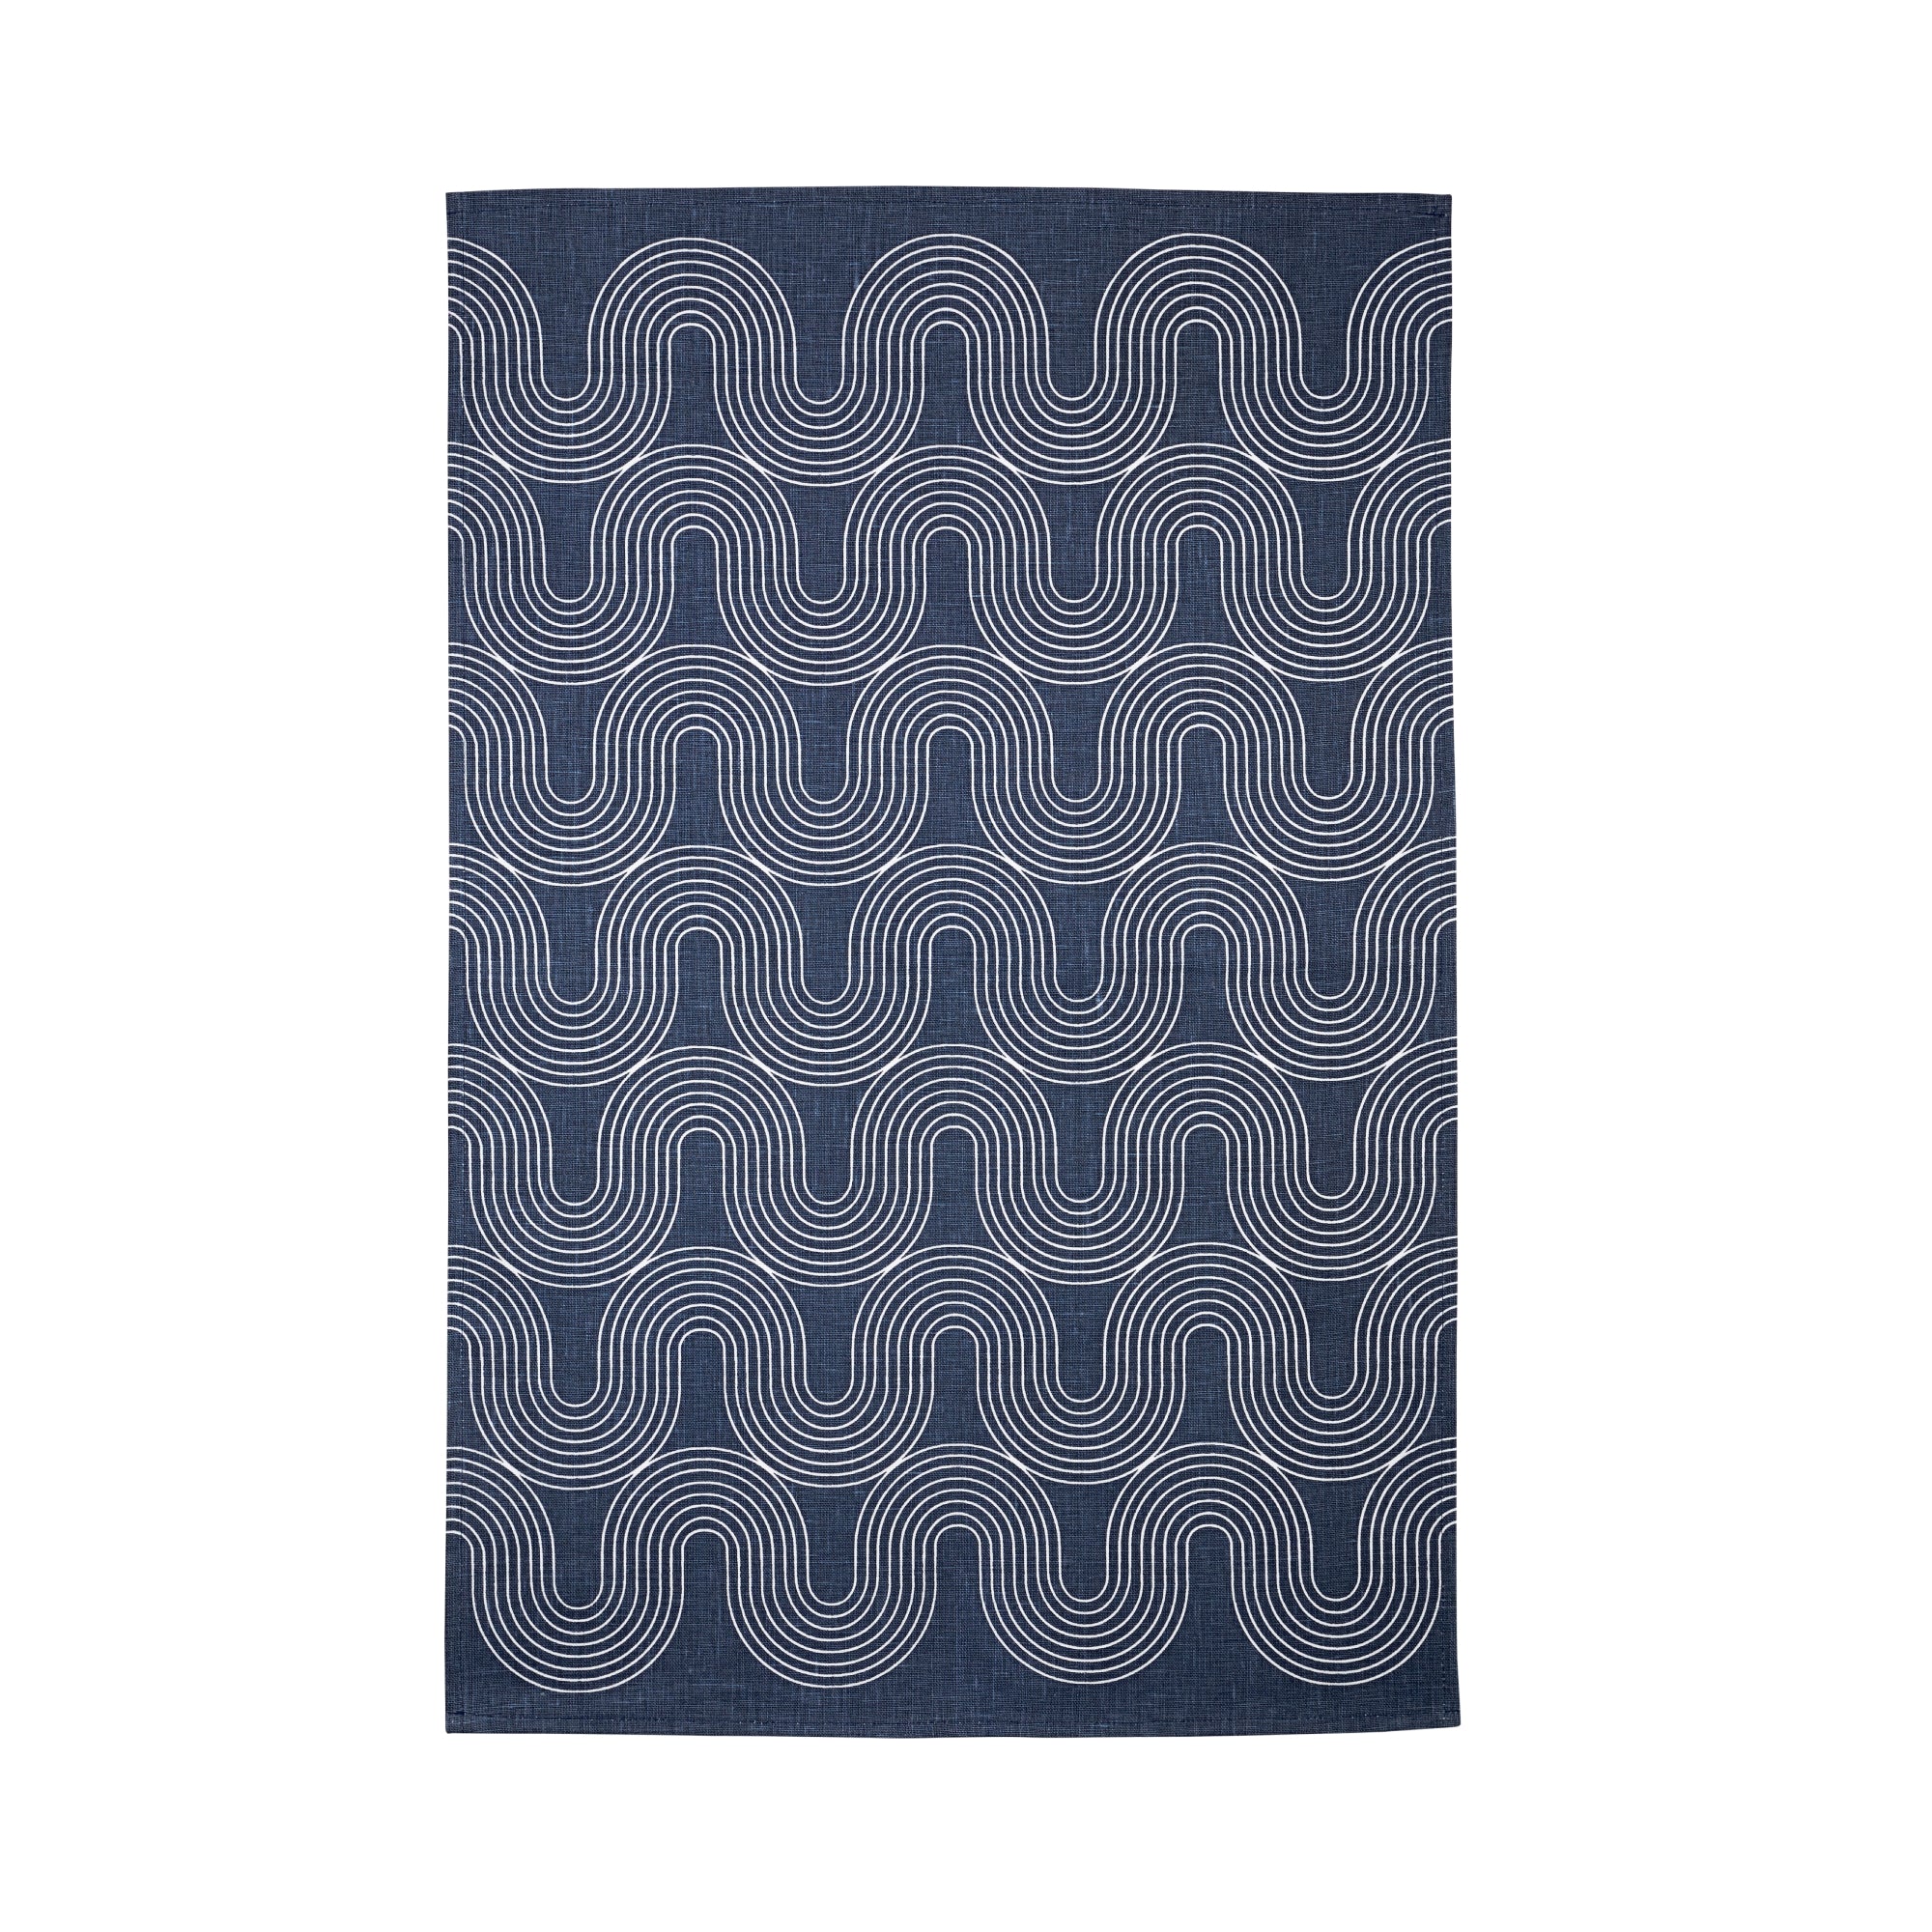 Ulster Weavers Causeway Geo Tea Towel - Cotton - One Size in Blue/White - Tea Towel - Ulster Weavers